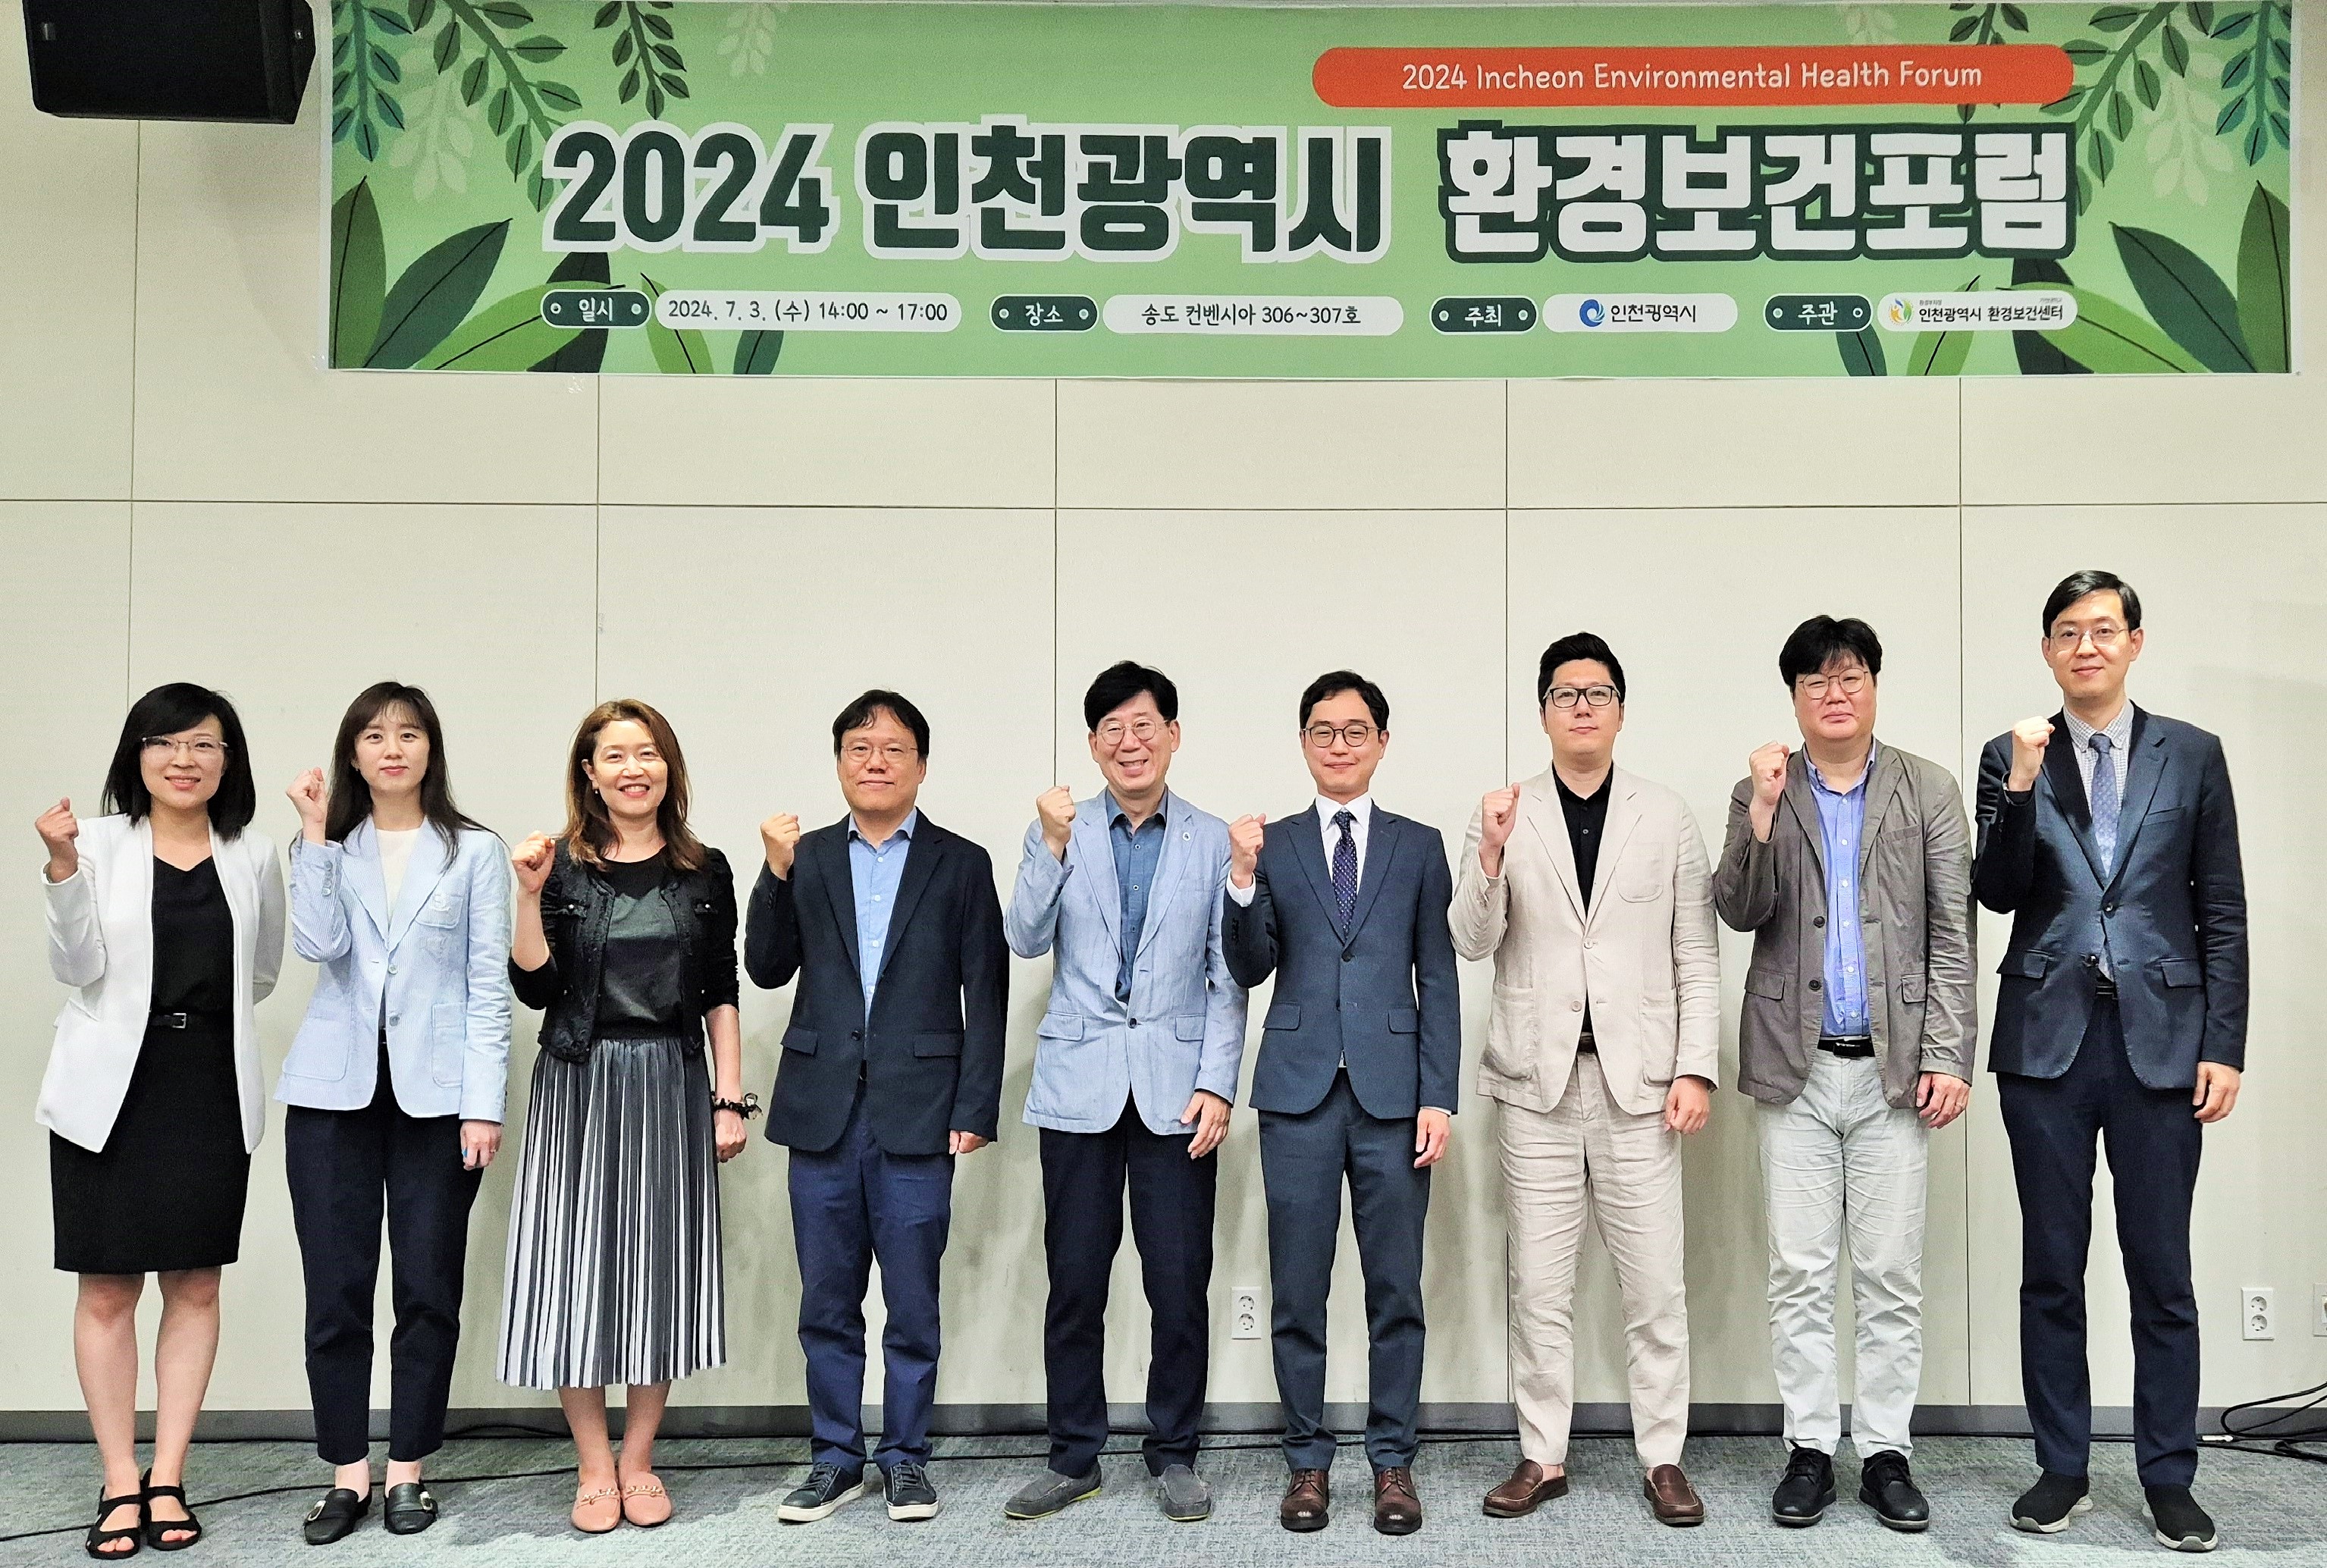 2024 인천광역시 환경보건포럼 개최